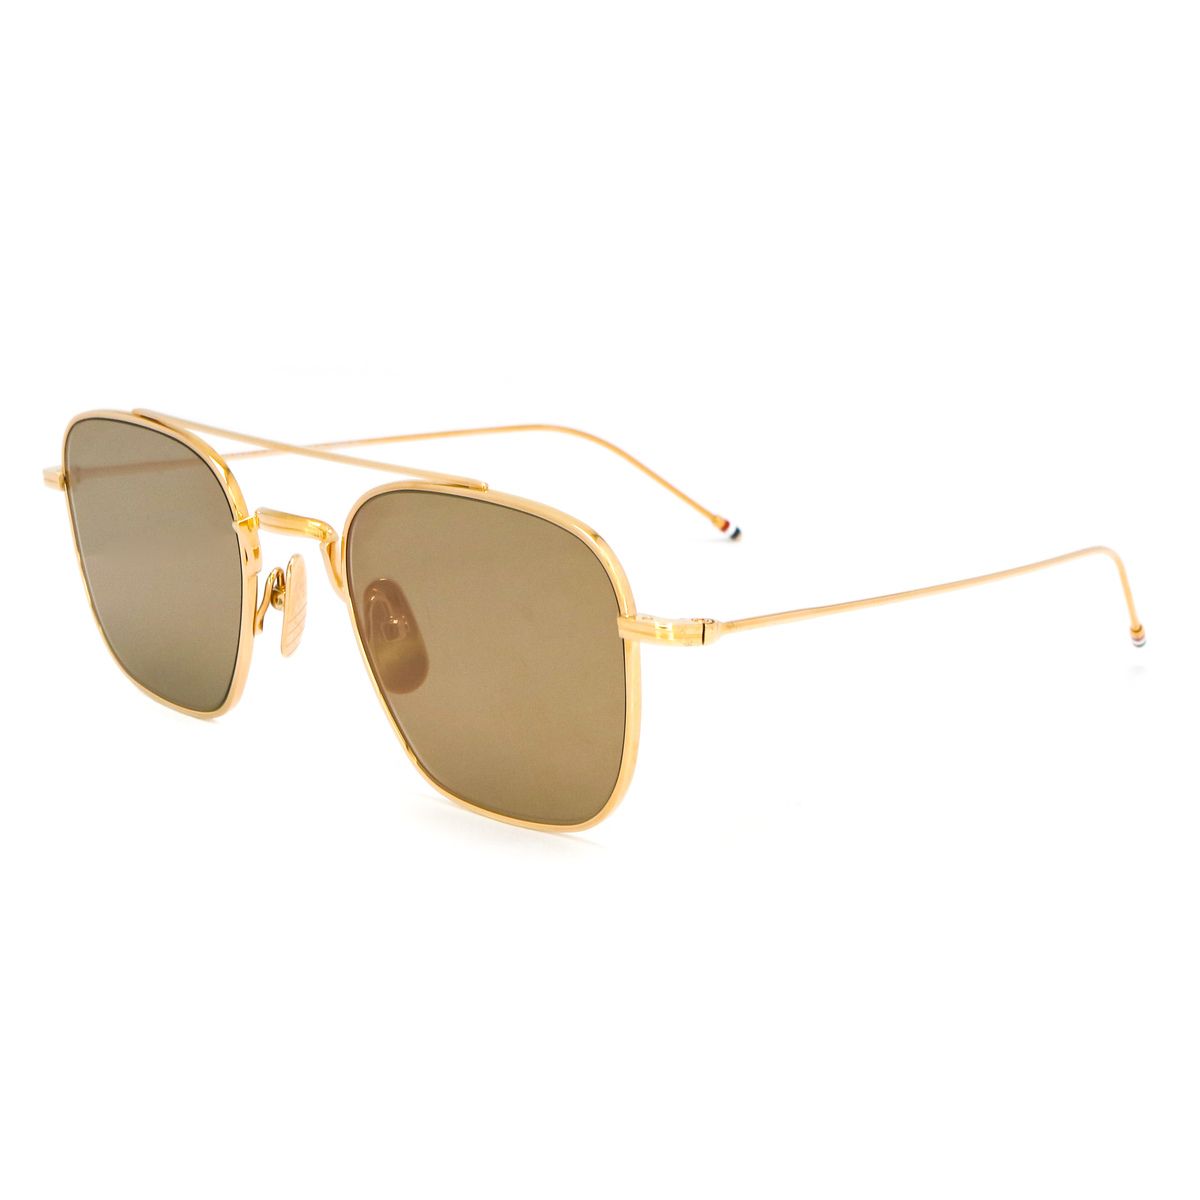 907 Square Sunglasses 1 - size 50